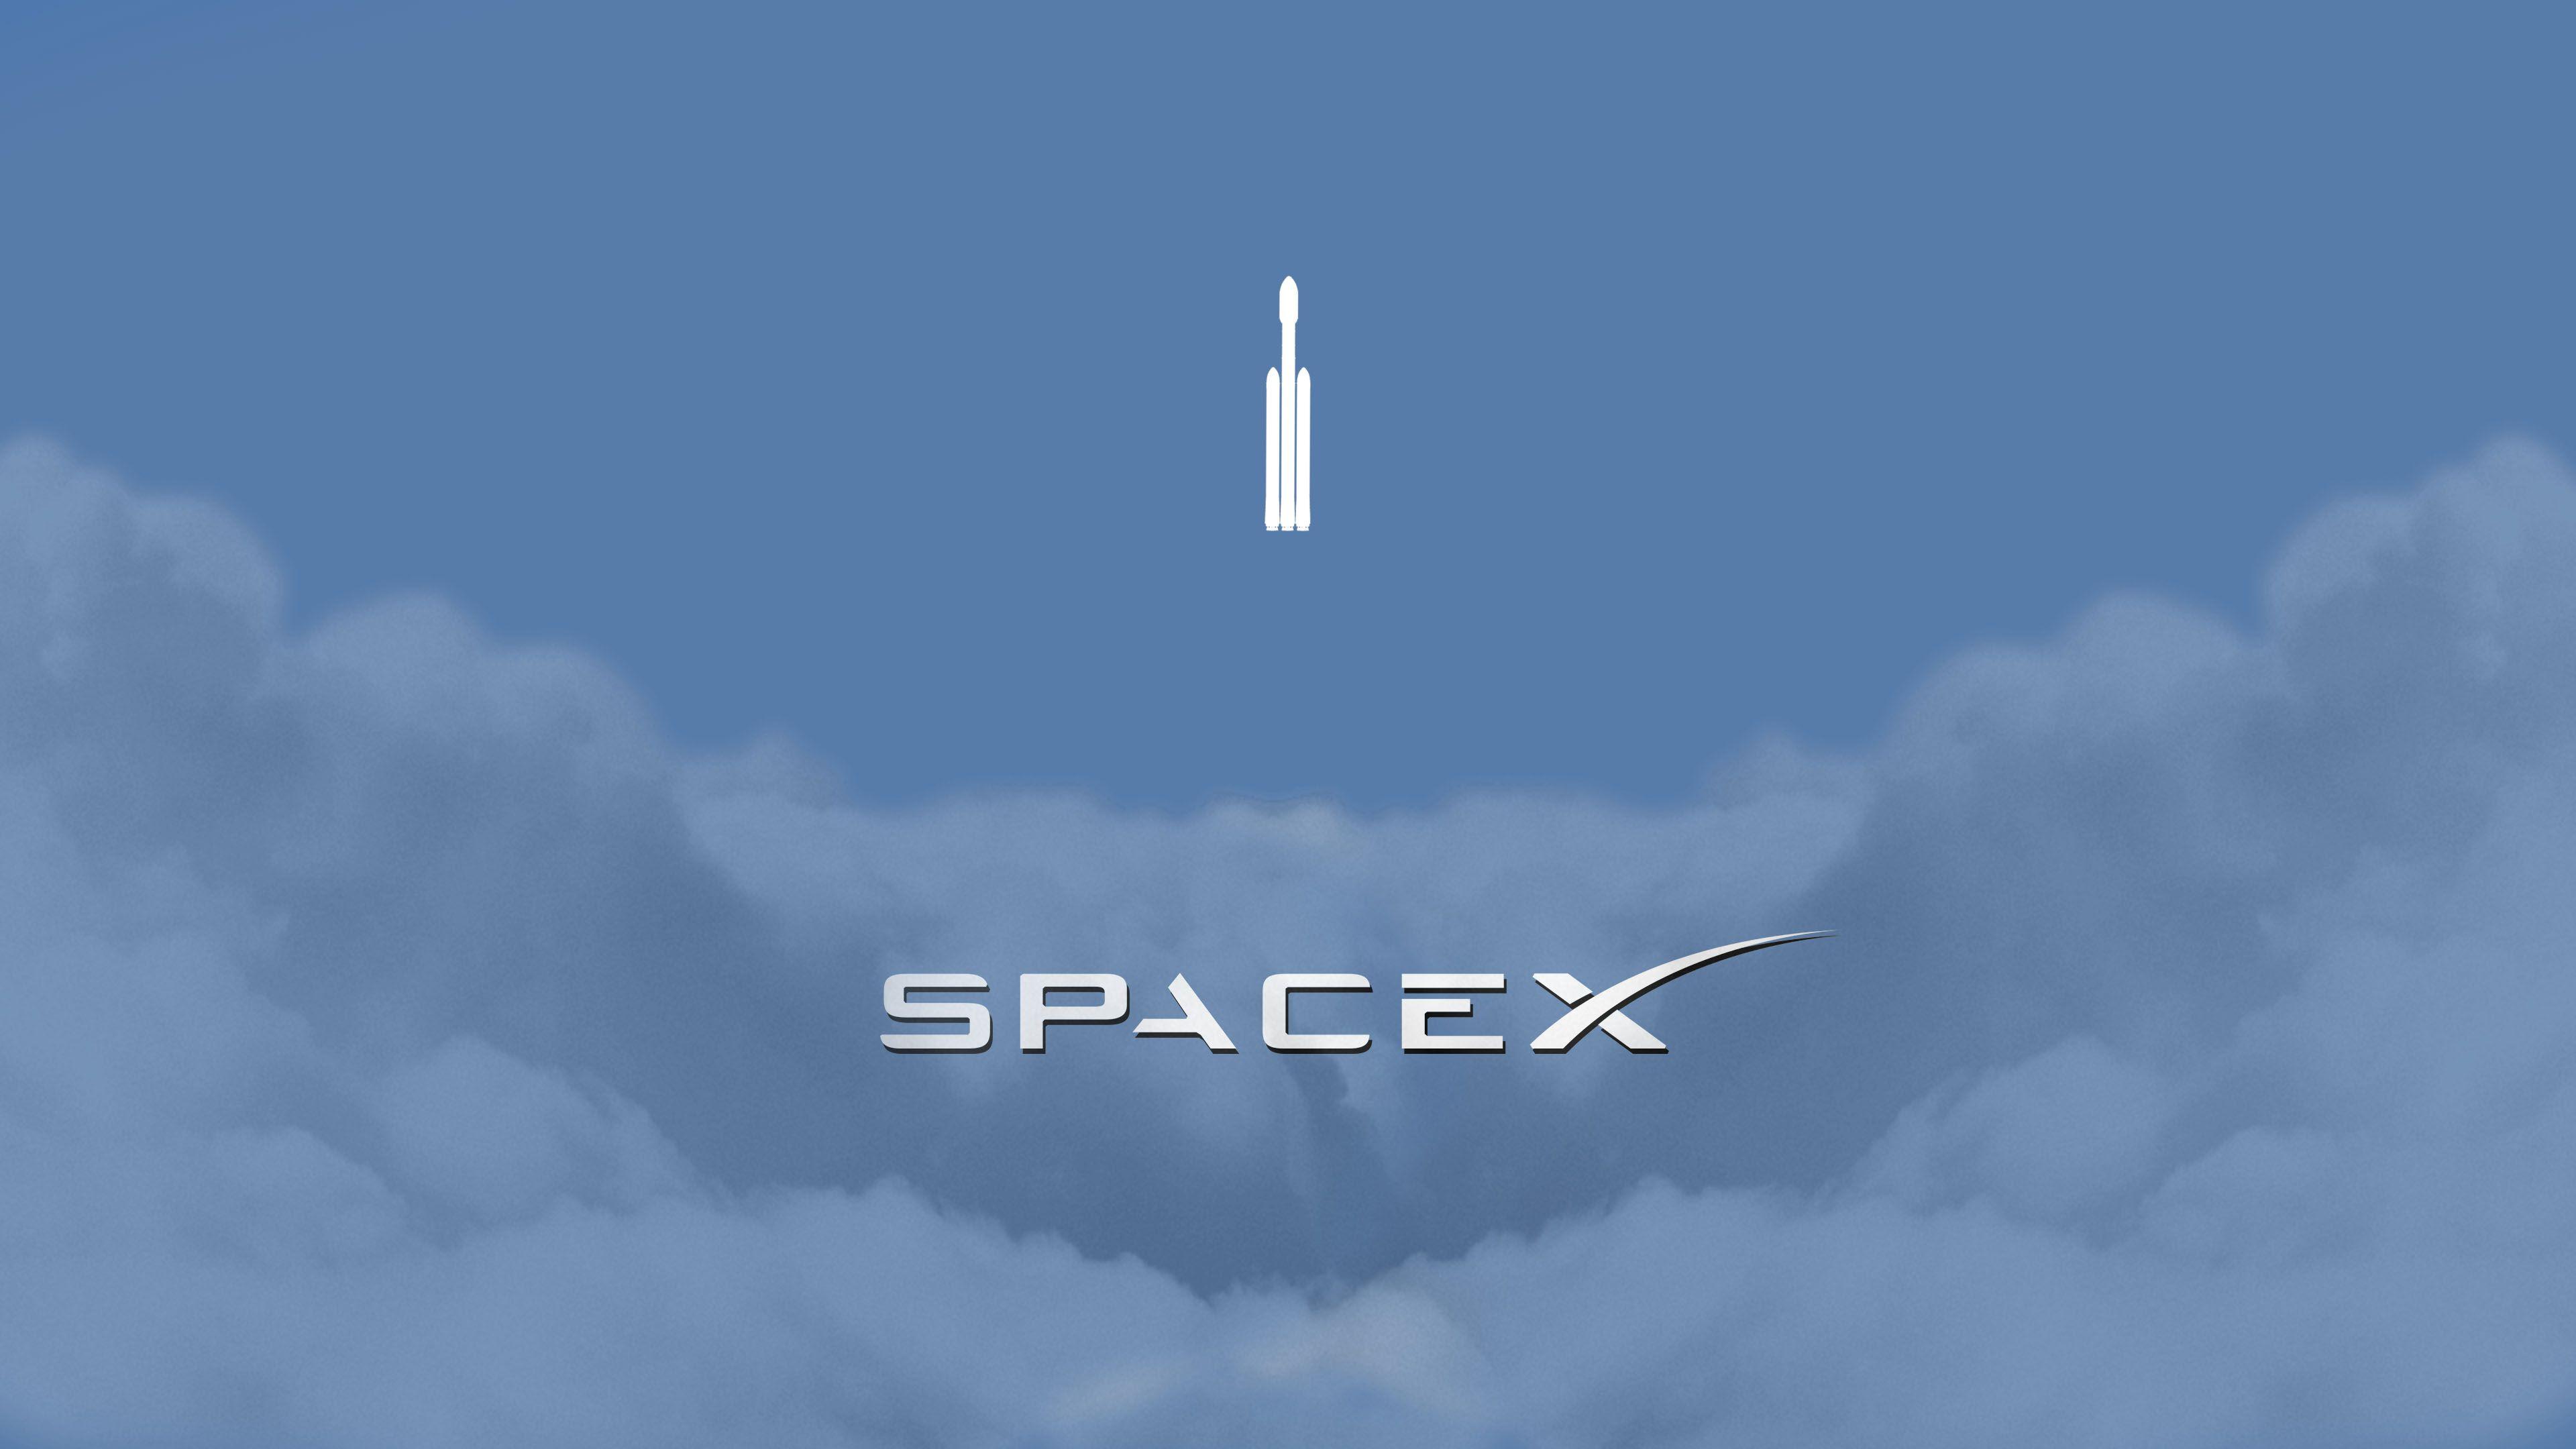 SpaceX Logo - Wallpaper : space, spaceship, minimalism, clouds, rocket, logo ...